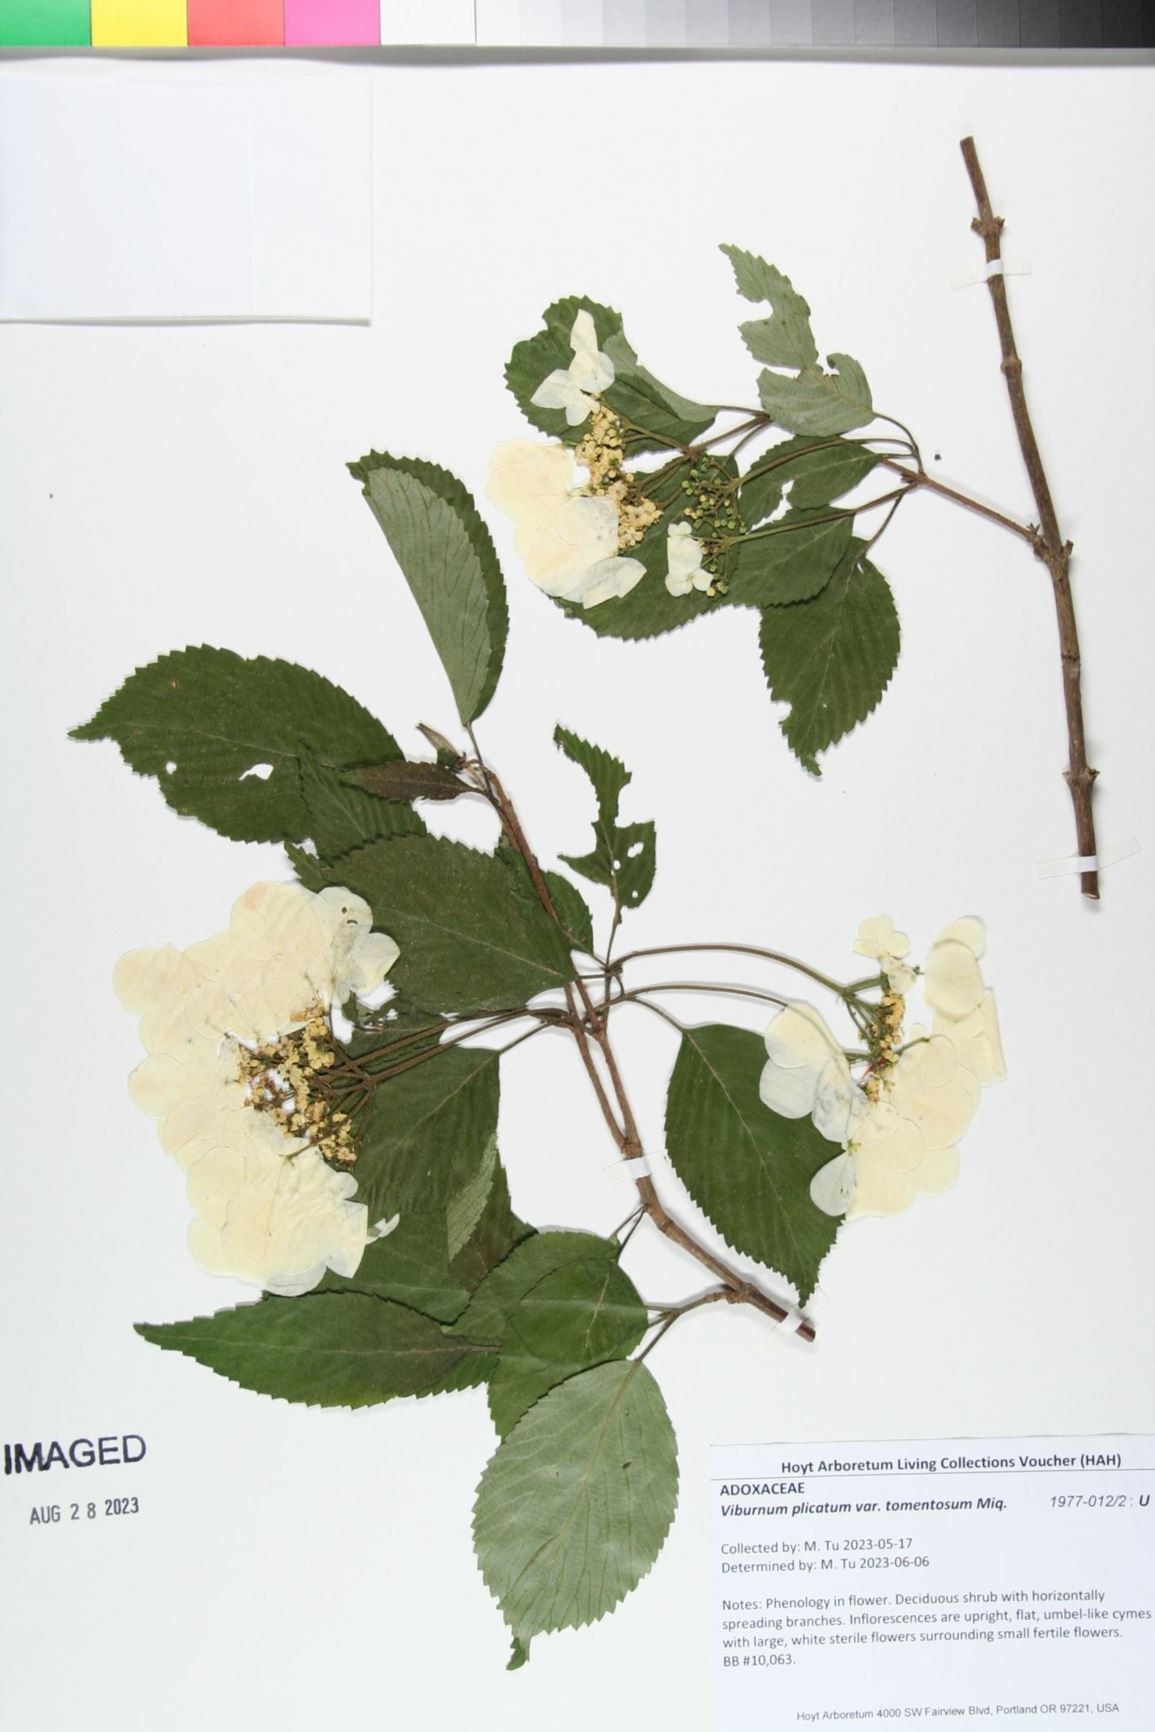 Viburnum plicatum var. tomentosum - Doublefile Viburnum